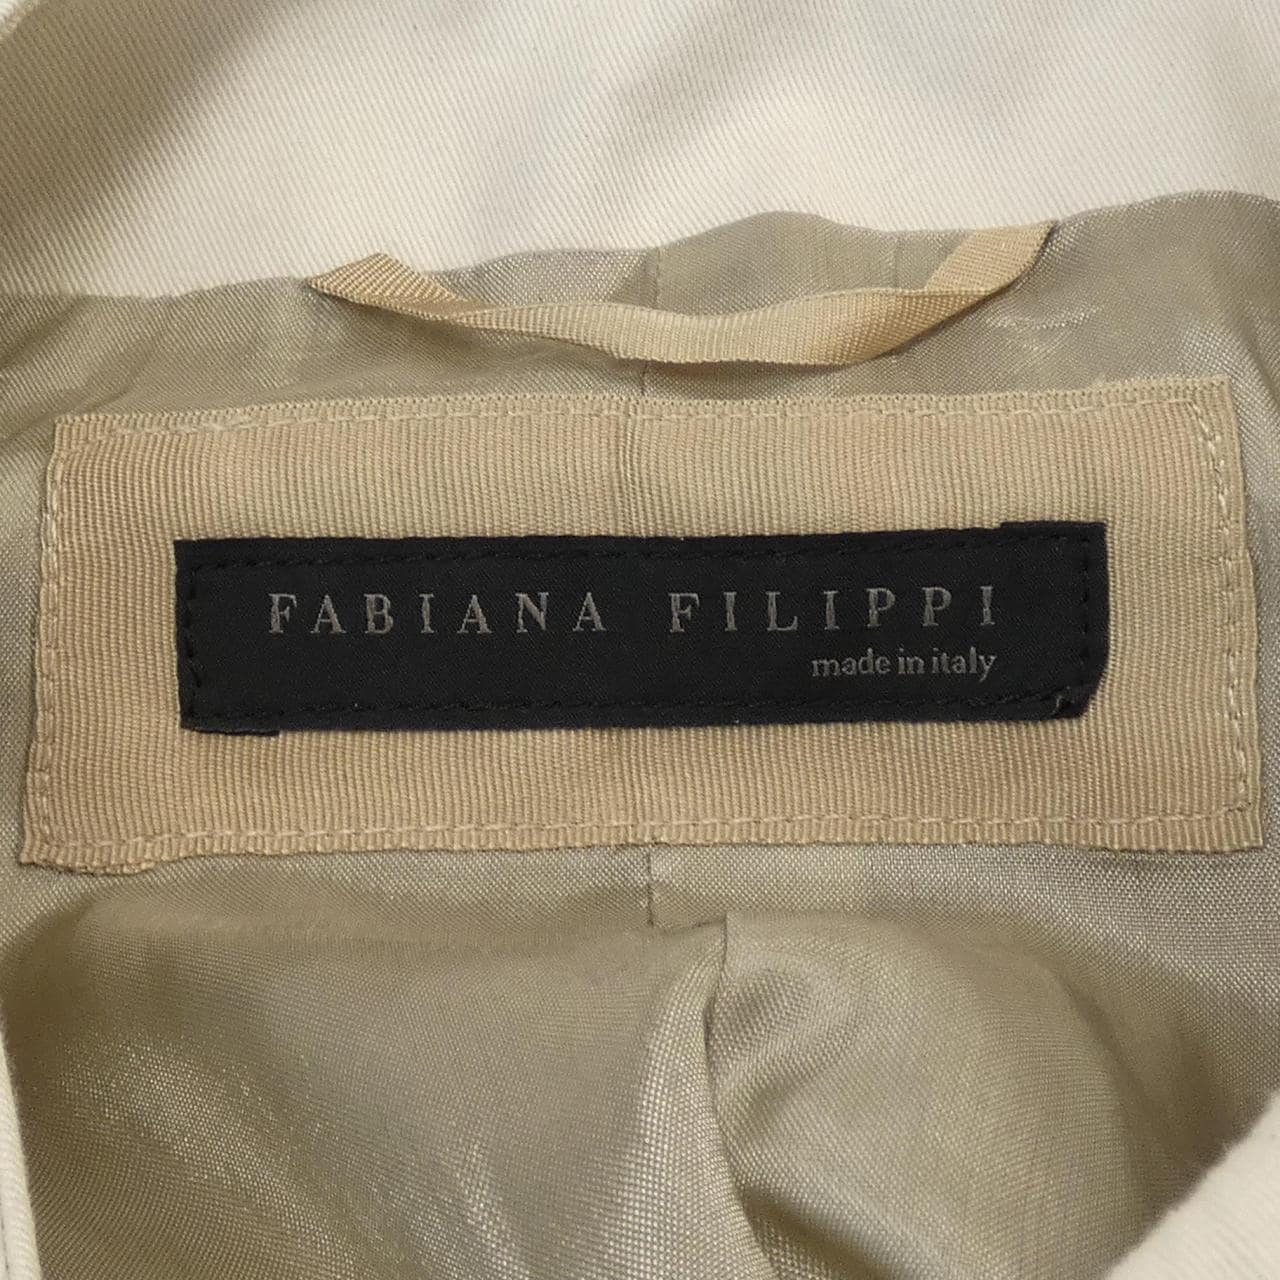 Fabiana FILIPPI FABIANA FILIPPI coat